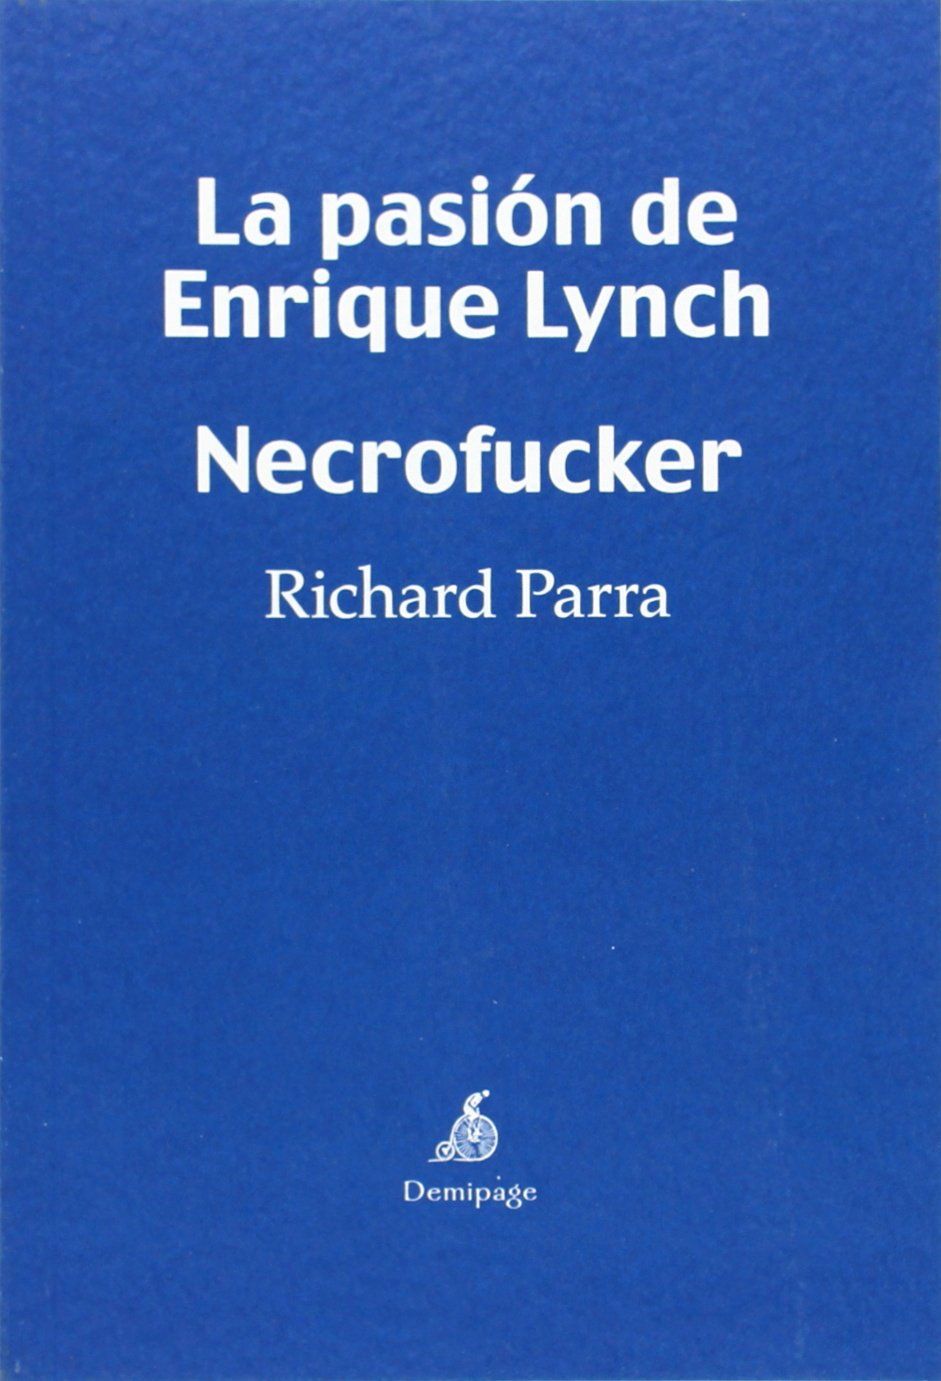 LA PASIÓN DE ENRIQUE LYNCH. NECROFUCKER